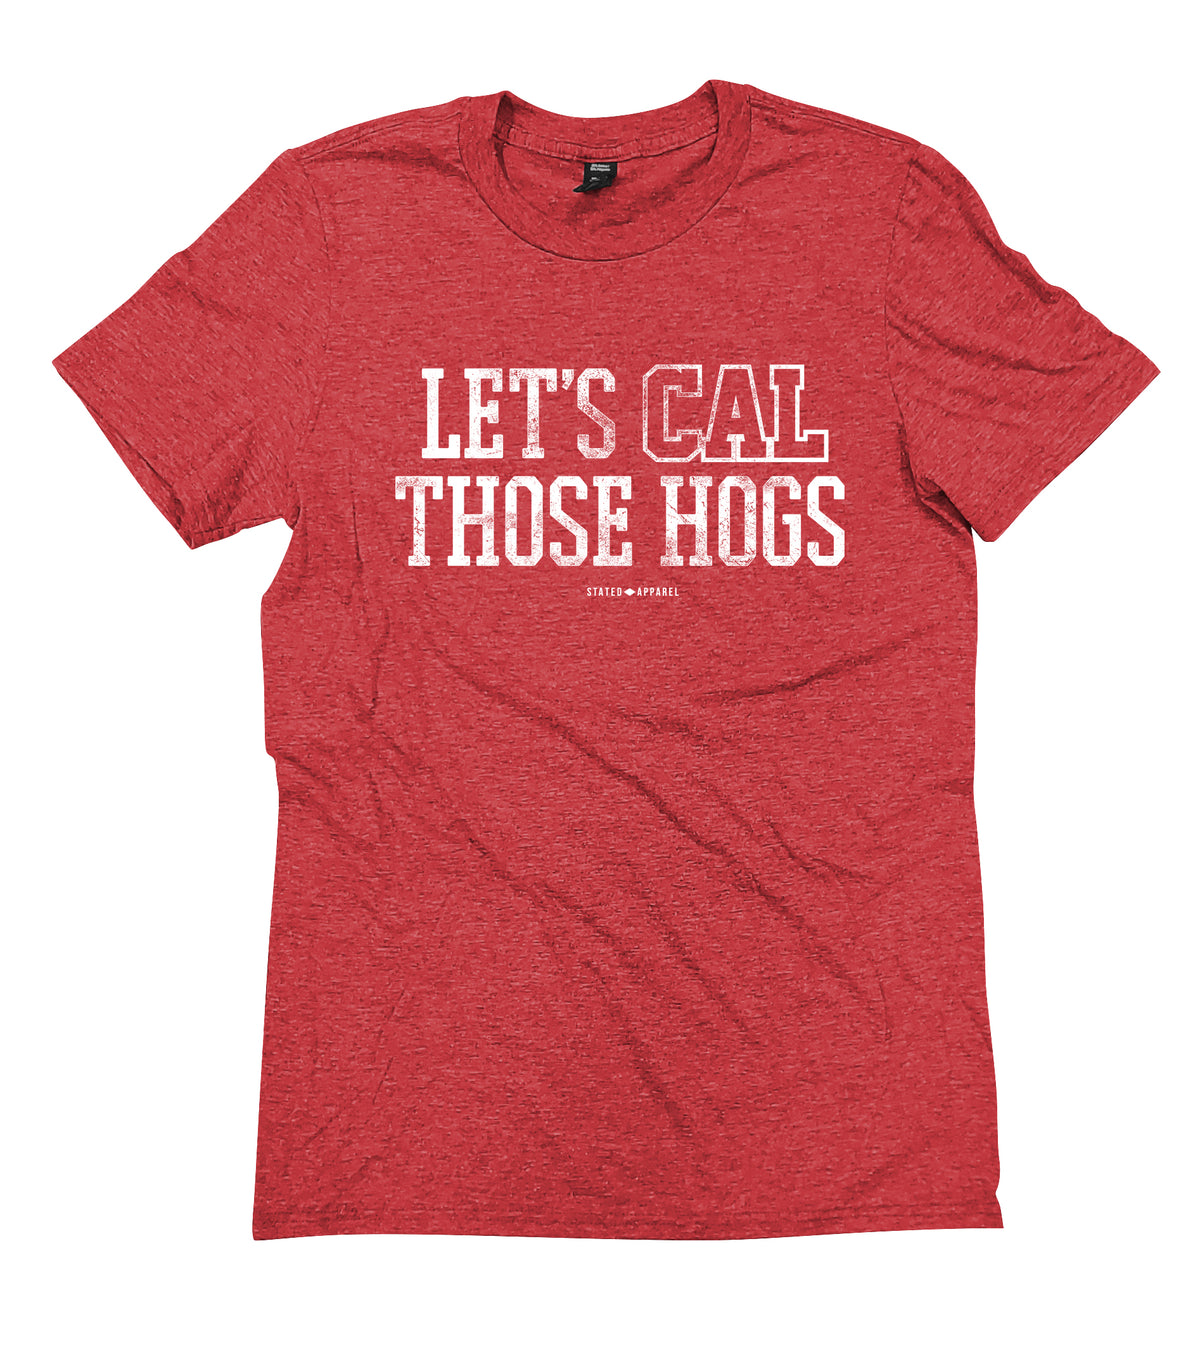 Cal the Hogs Tee